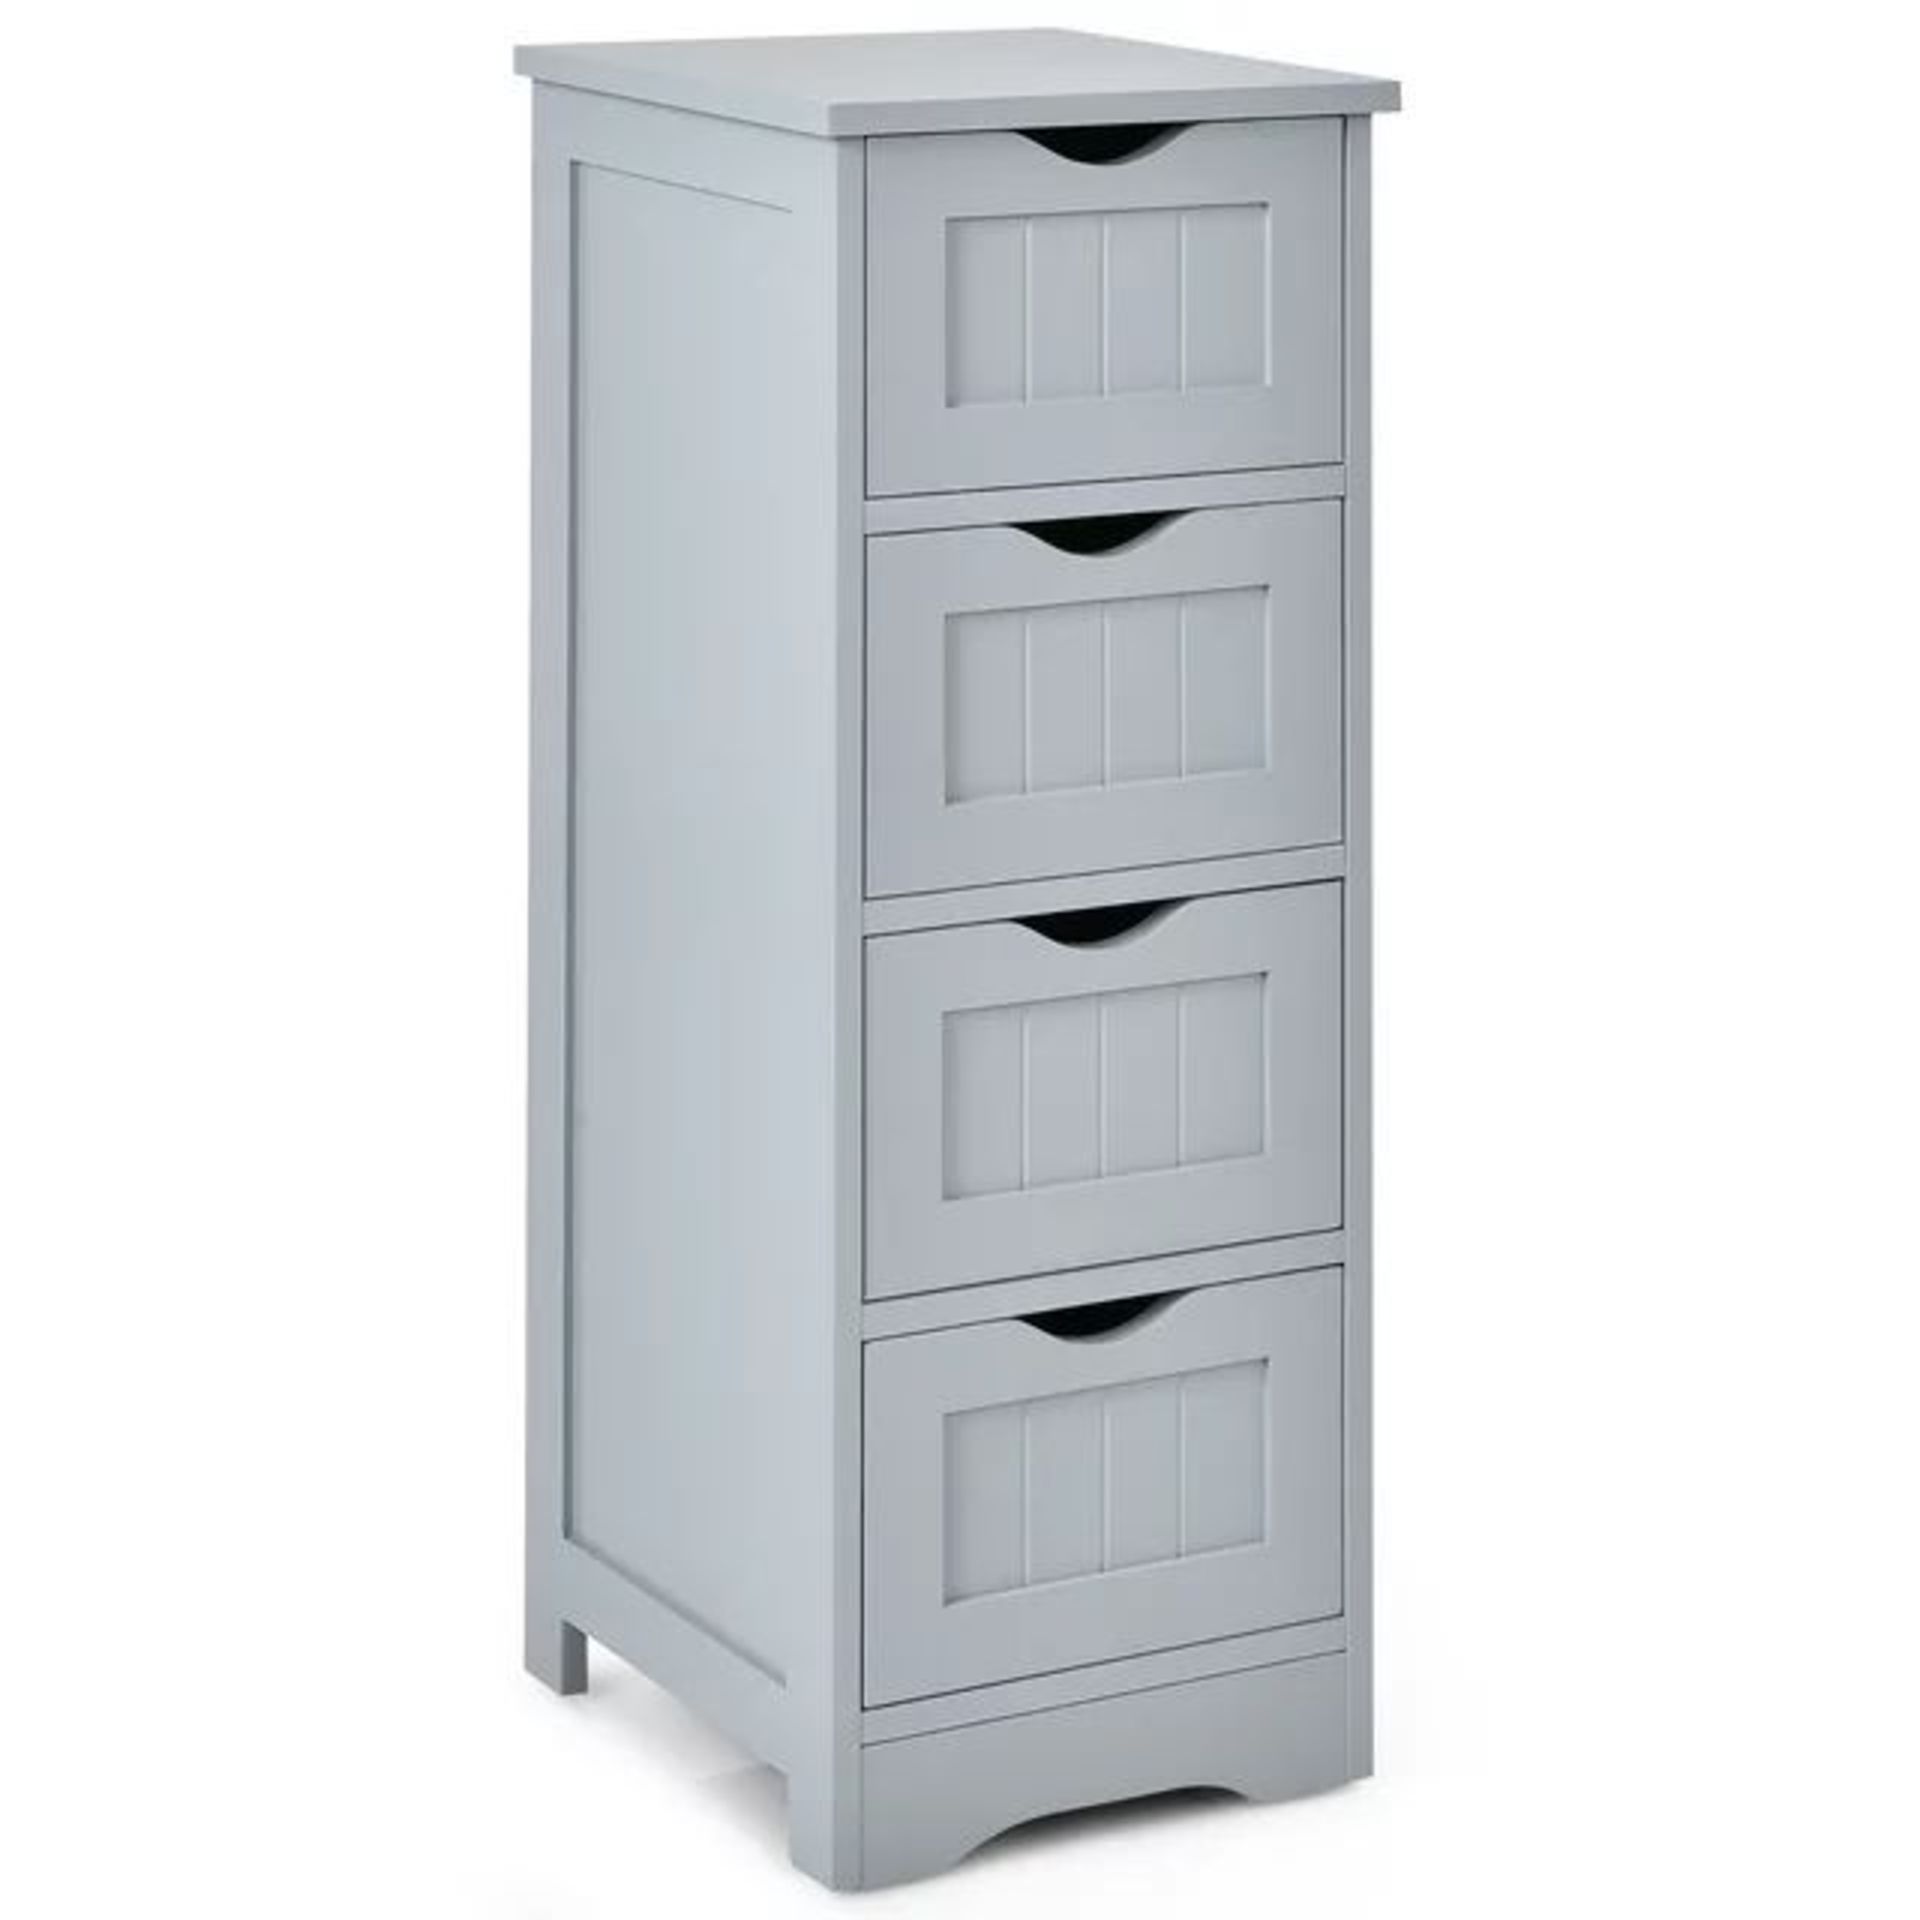 Luxury Floor Storage Cabinet Bathroom Organizer Free Standing Drawers. - ER53.